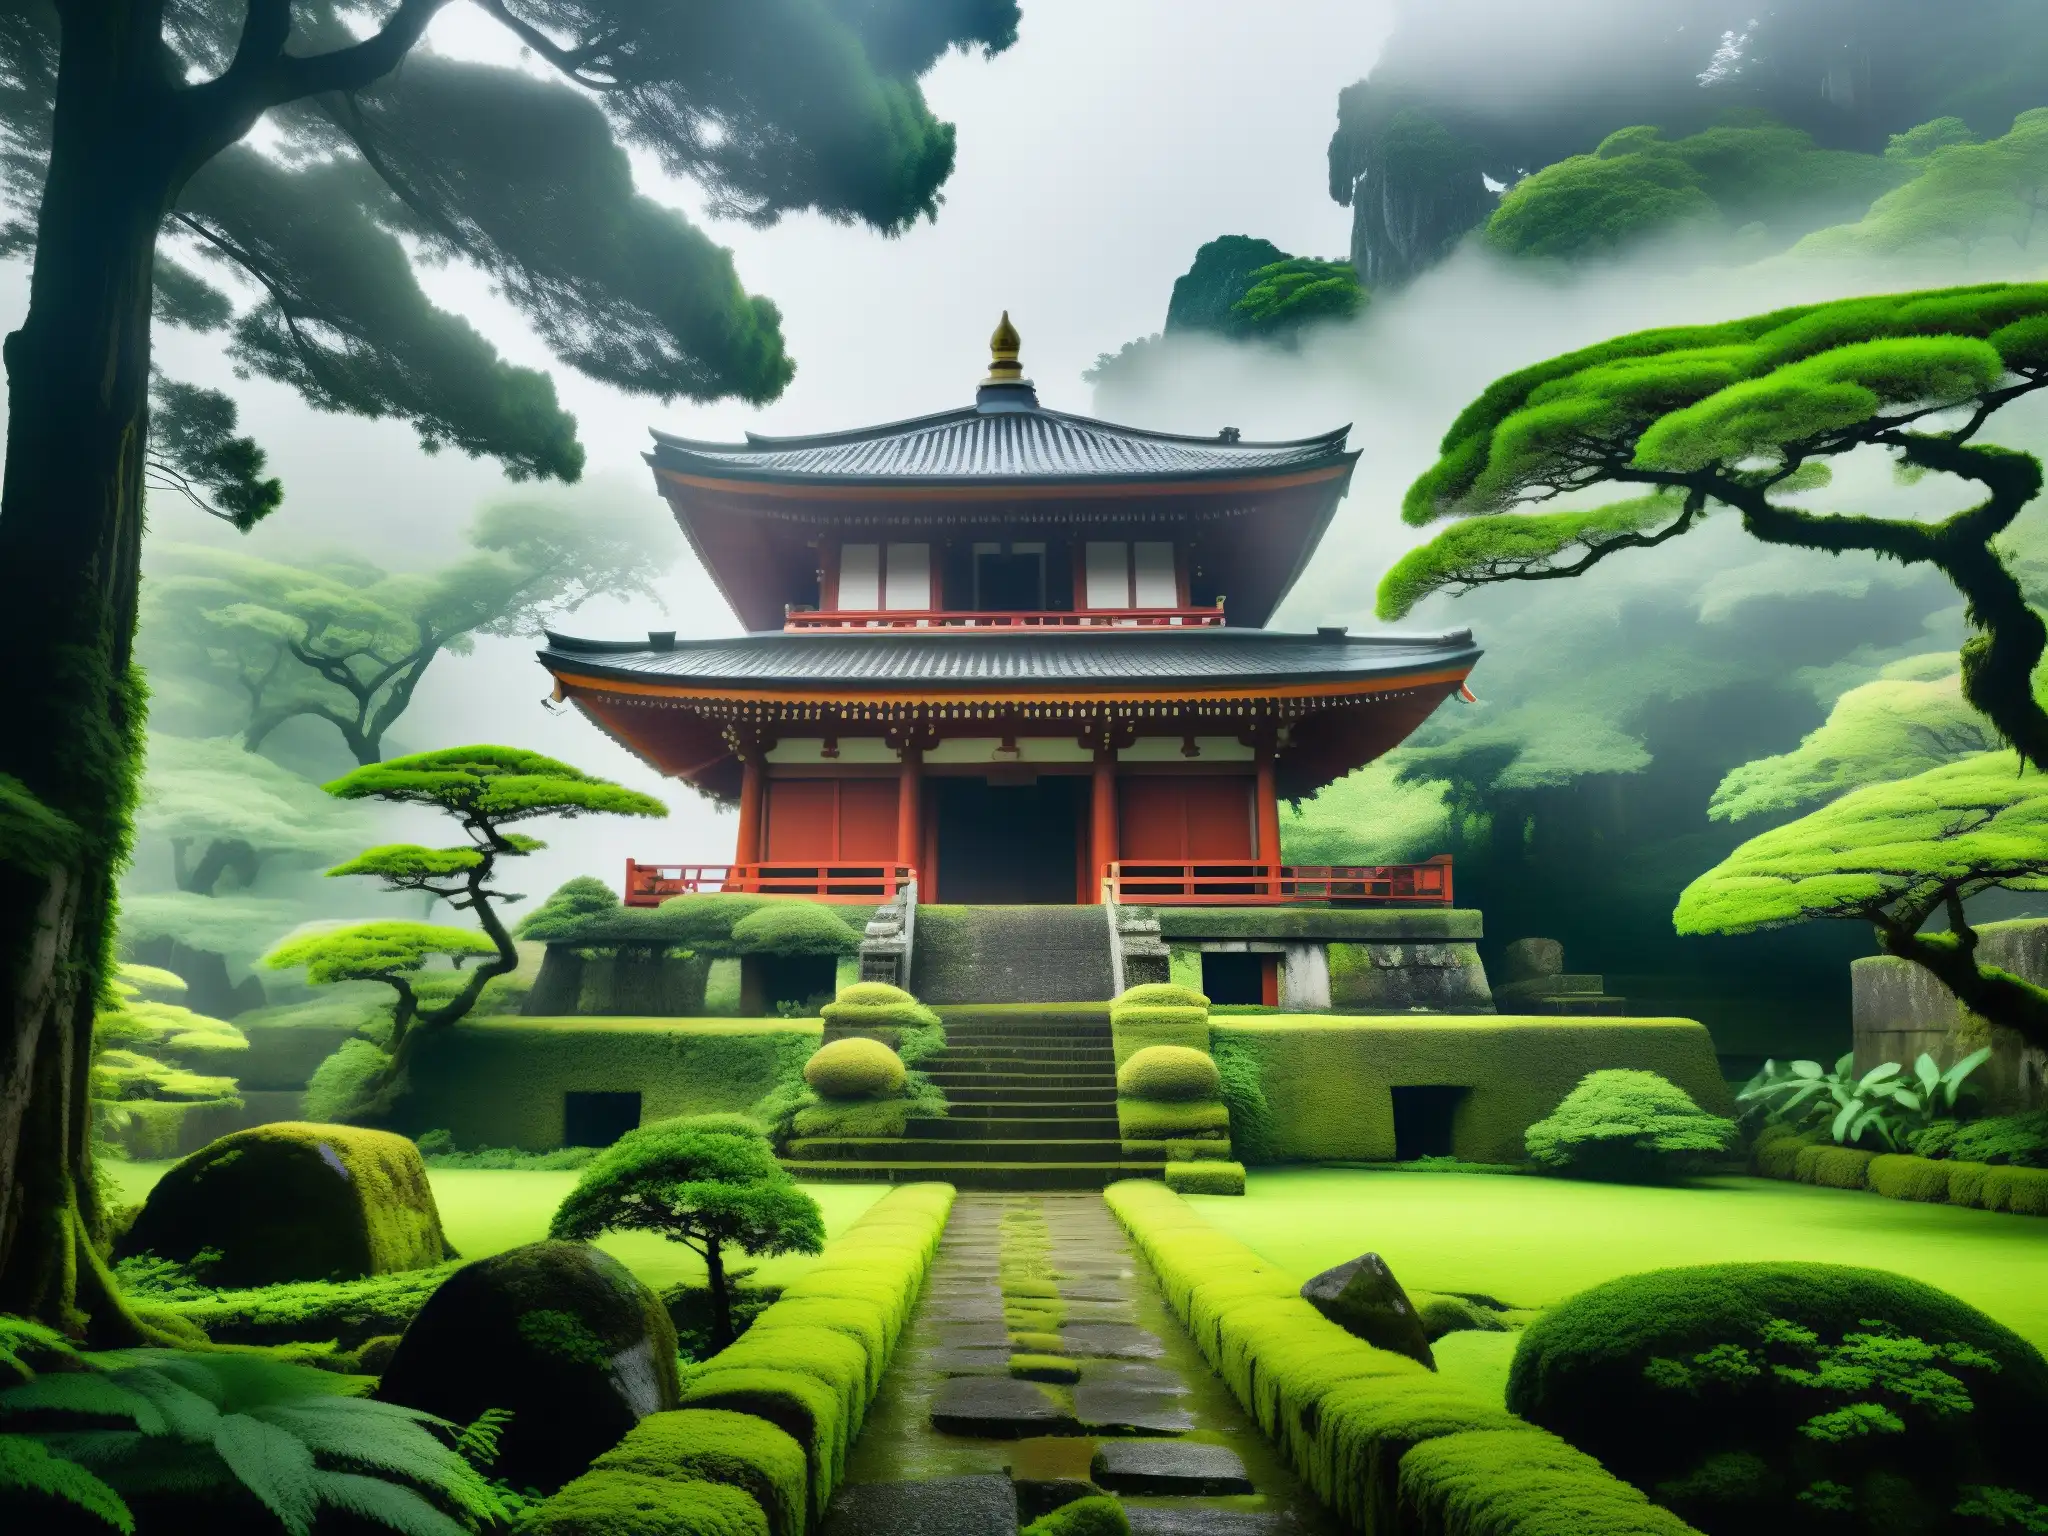 Ruinas del antiguo templo japonés cubiertas de vegetación exuberante y rodeadas de neblina, evocando la leyenda urbana de Taira no Masakado en Tokio